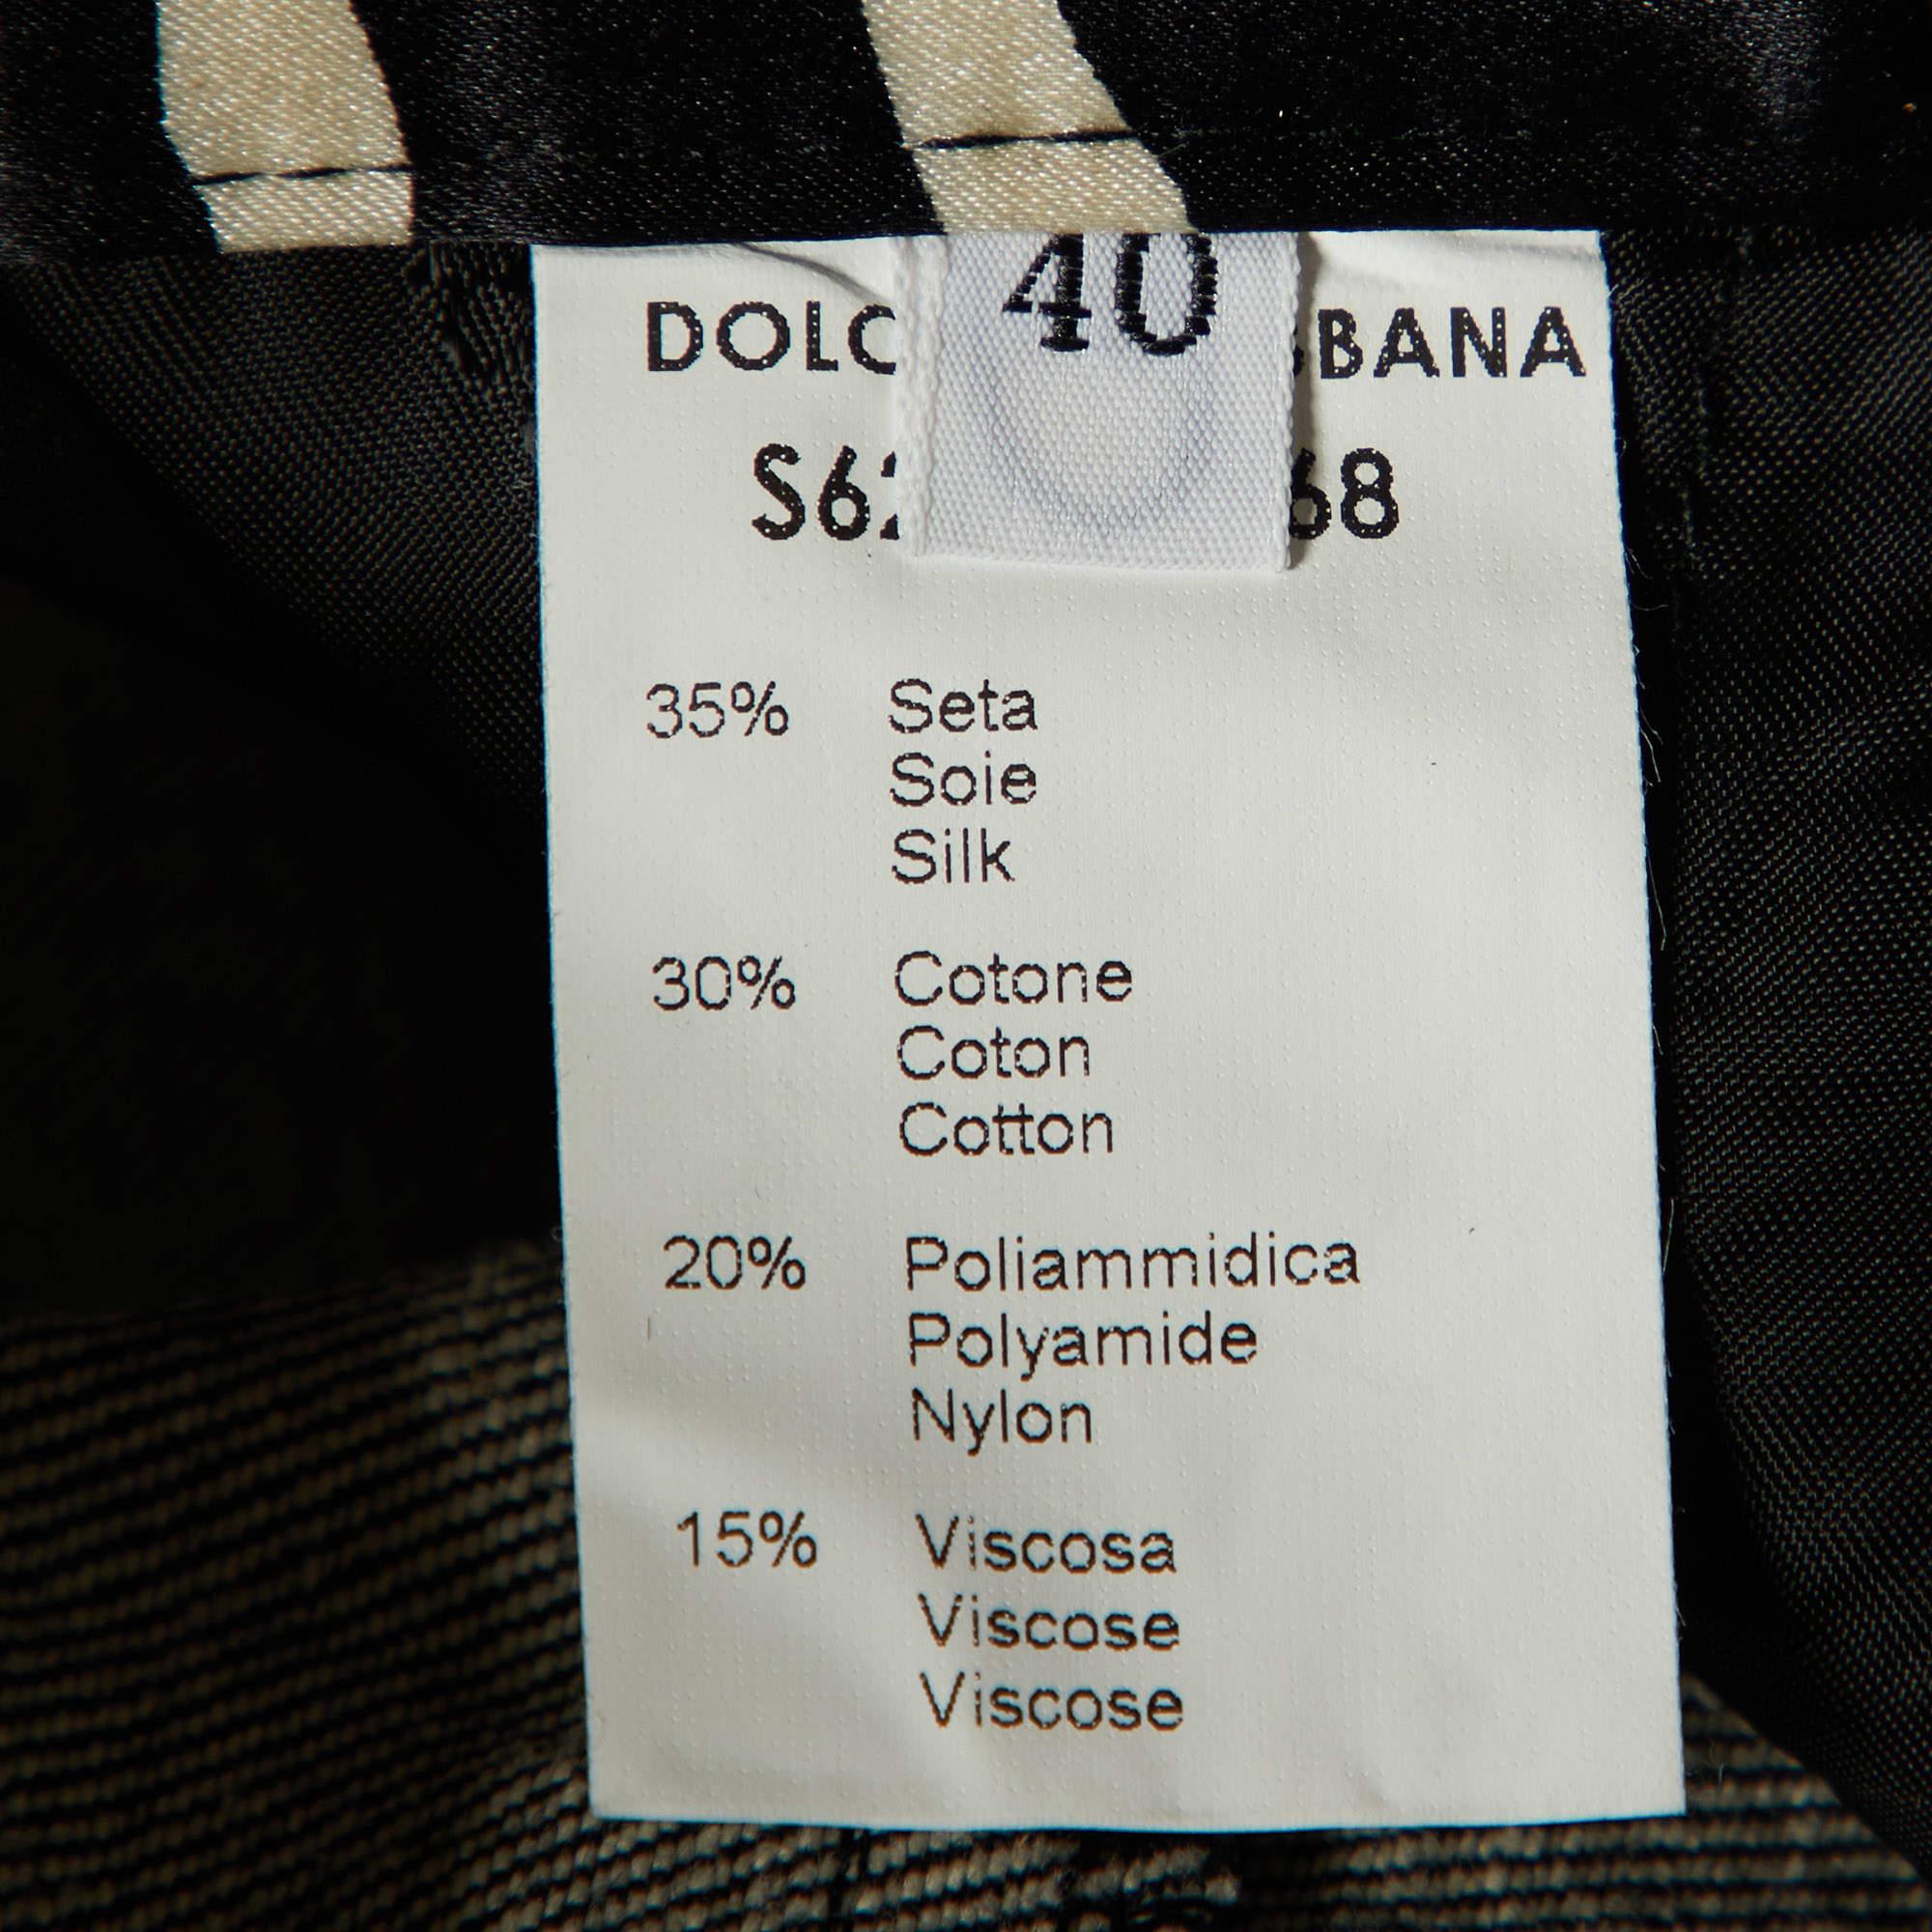 Dolce & Gabbana Black & White Zebra Printed Silk Satin Coat & Pants L/S 2